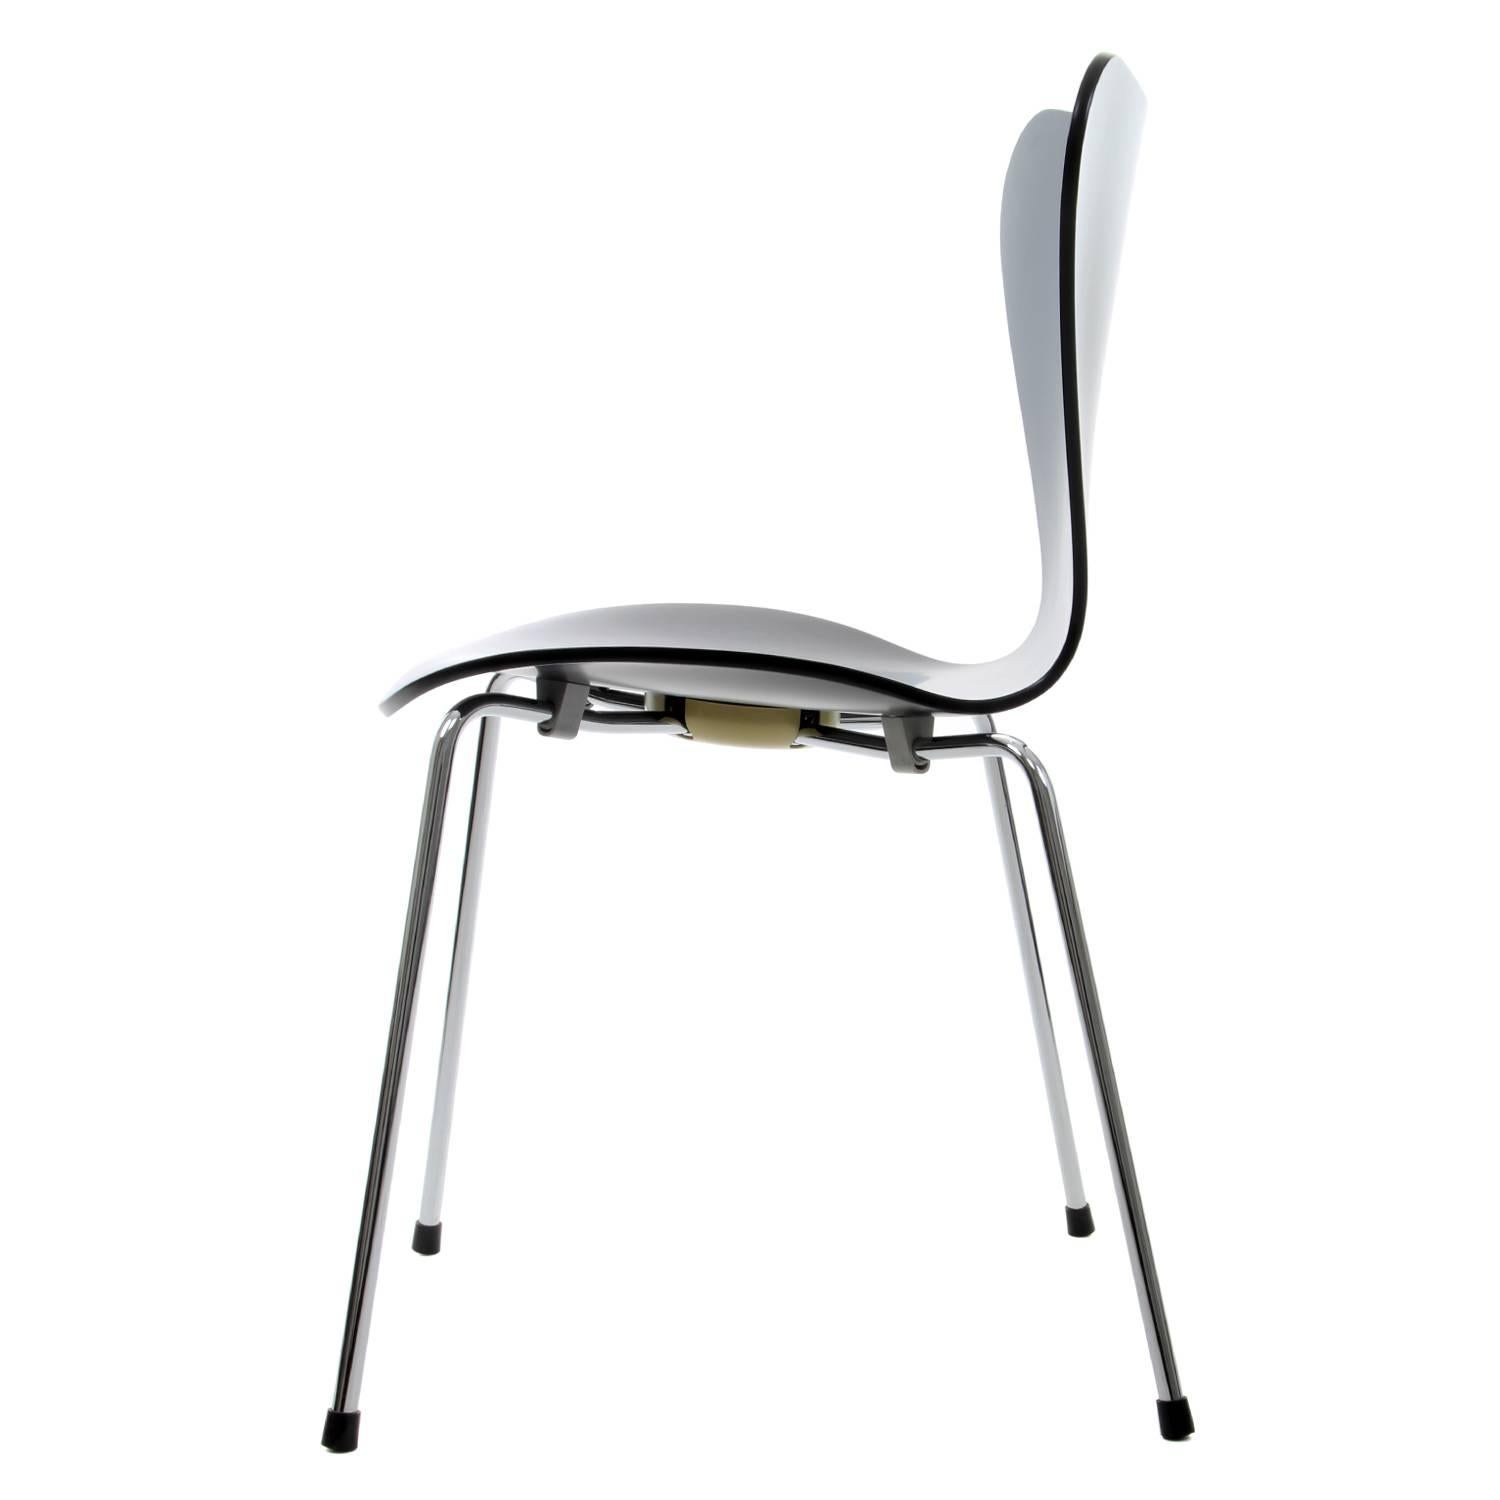 Veneer Series 7 Chair by Arne Jacobsen, for Fritz Hansen 1955. Professionally Restored For Sale